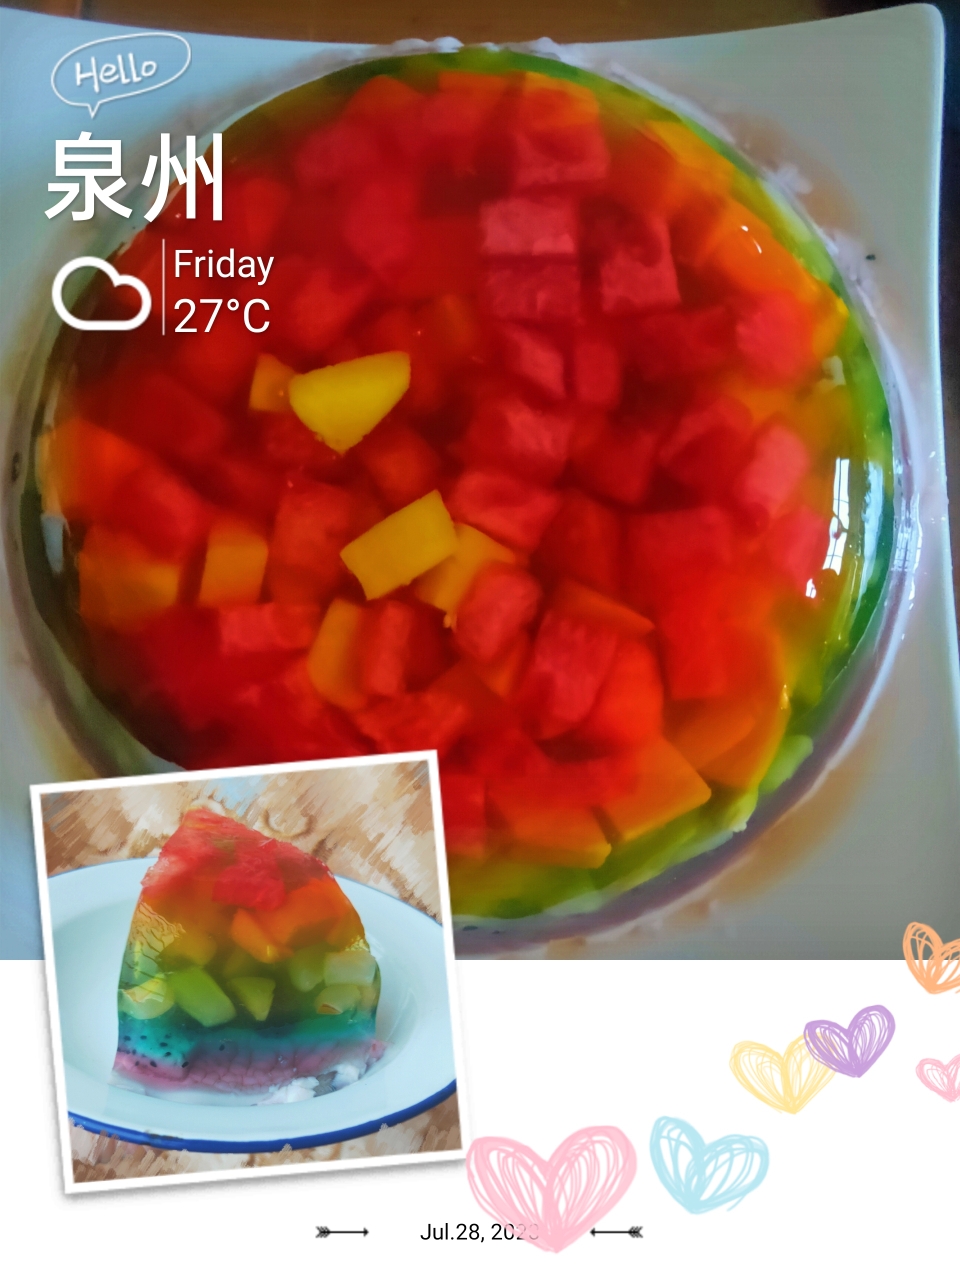 彩虹水果布丁蛋糕